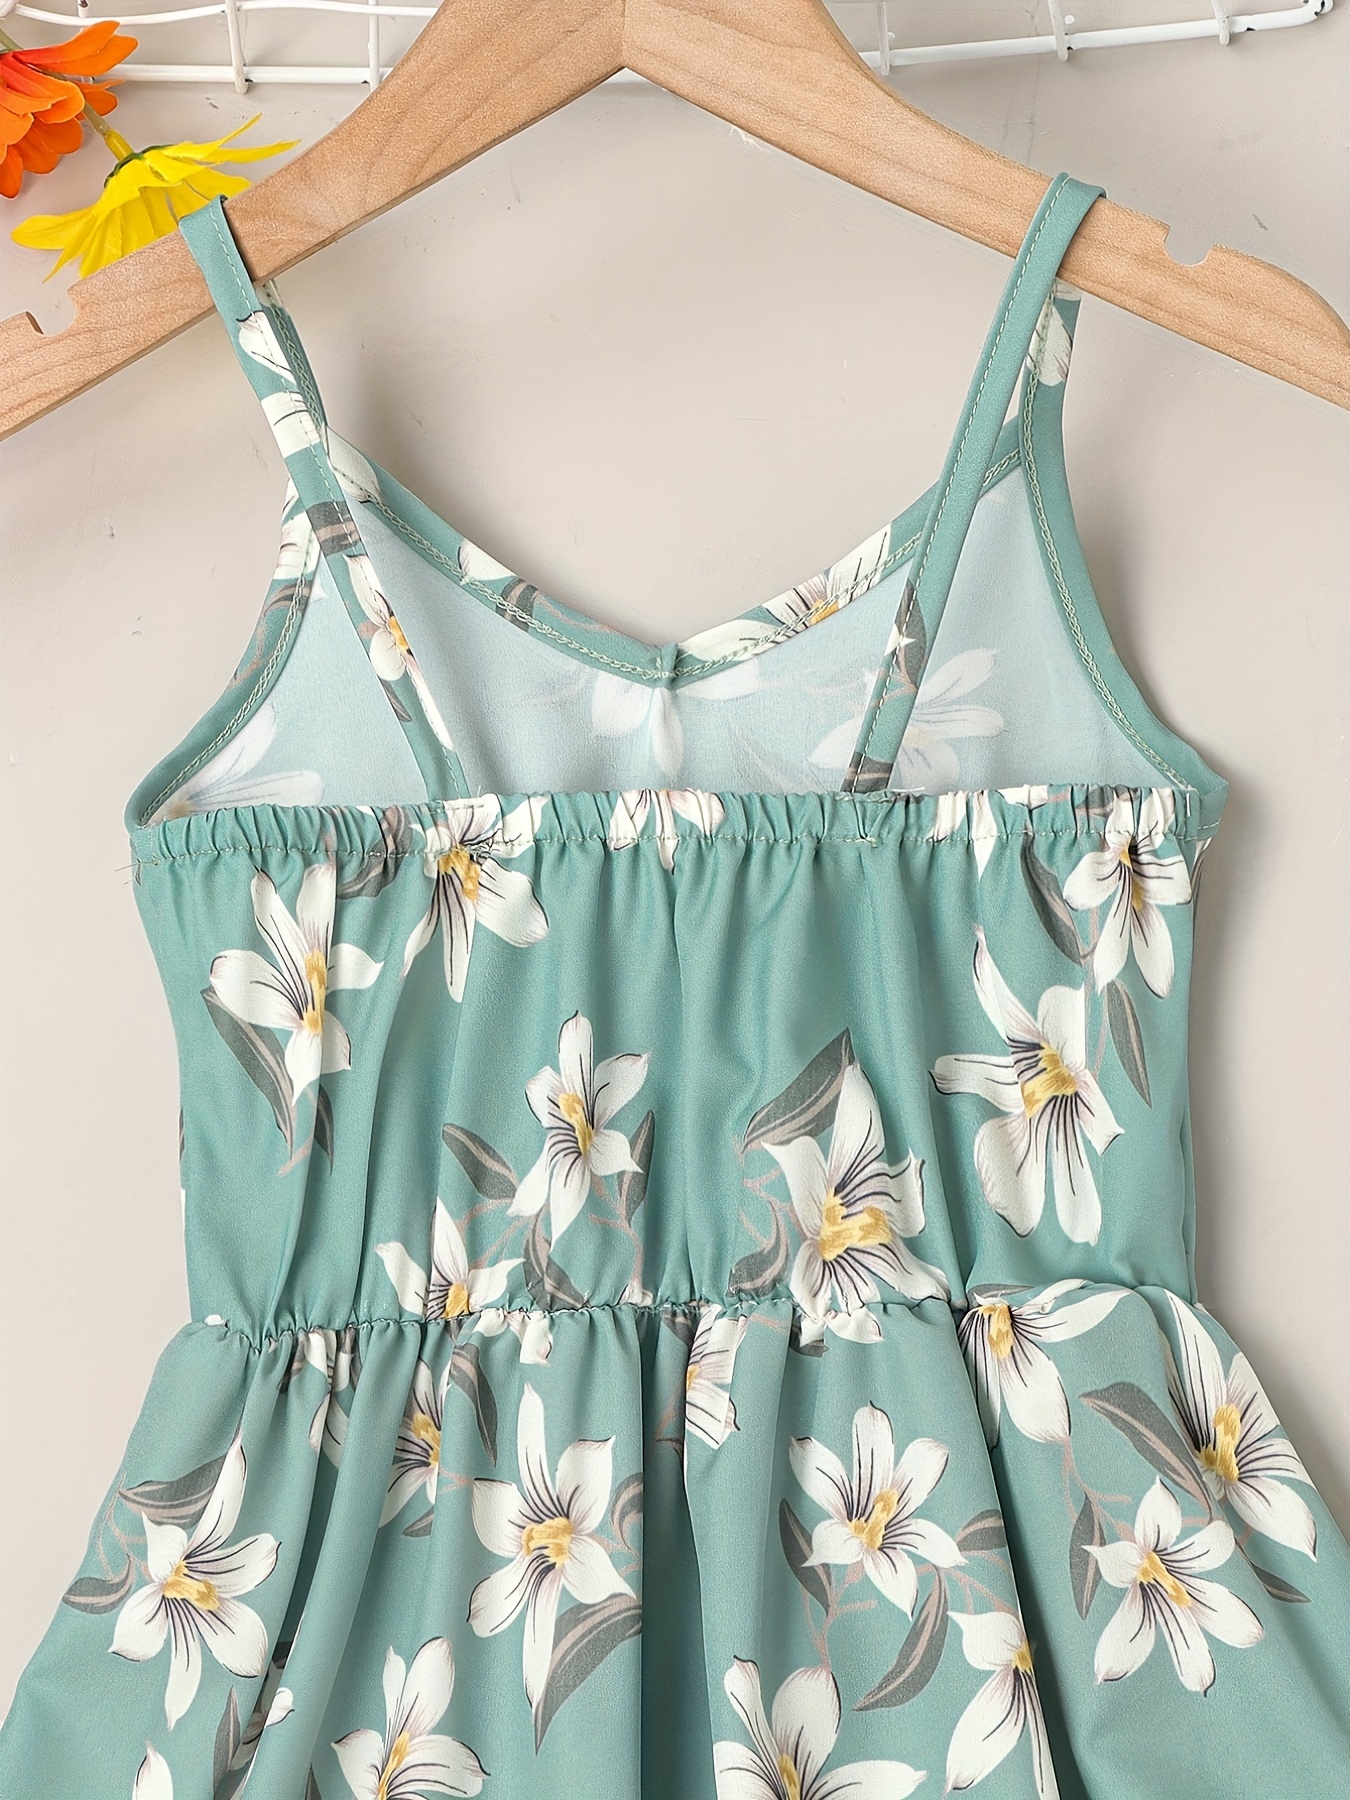 little girls cute sundress floral pattern party beach dress v neck elastic waist camisole dress for summer details 23